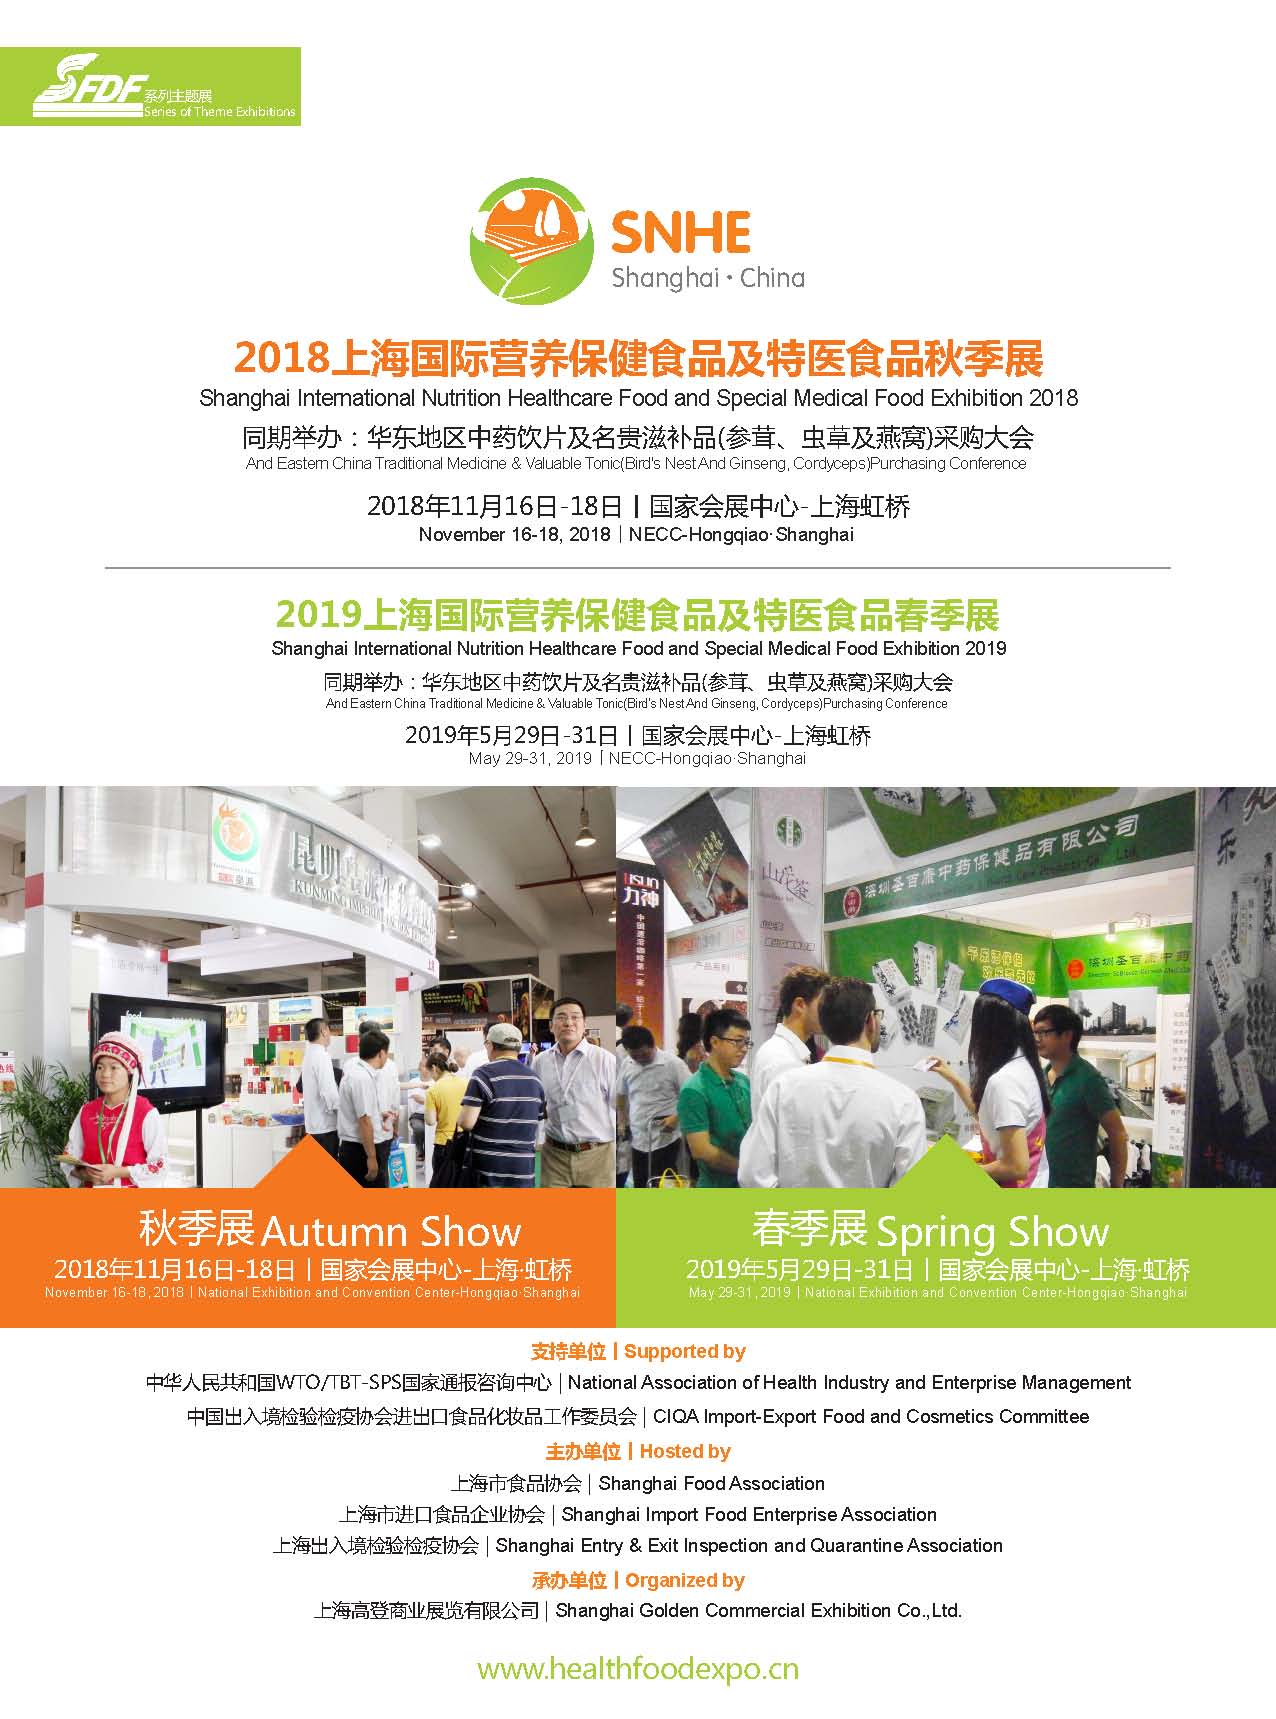 2018年11月上海国际营养保健食品及特医食品展